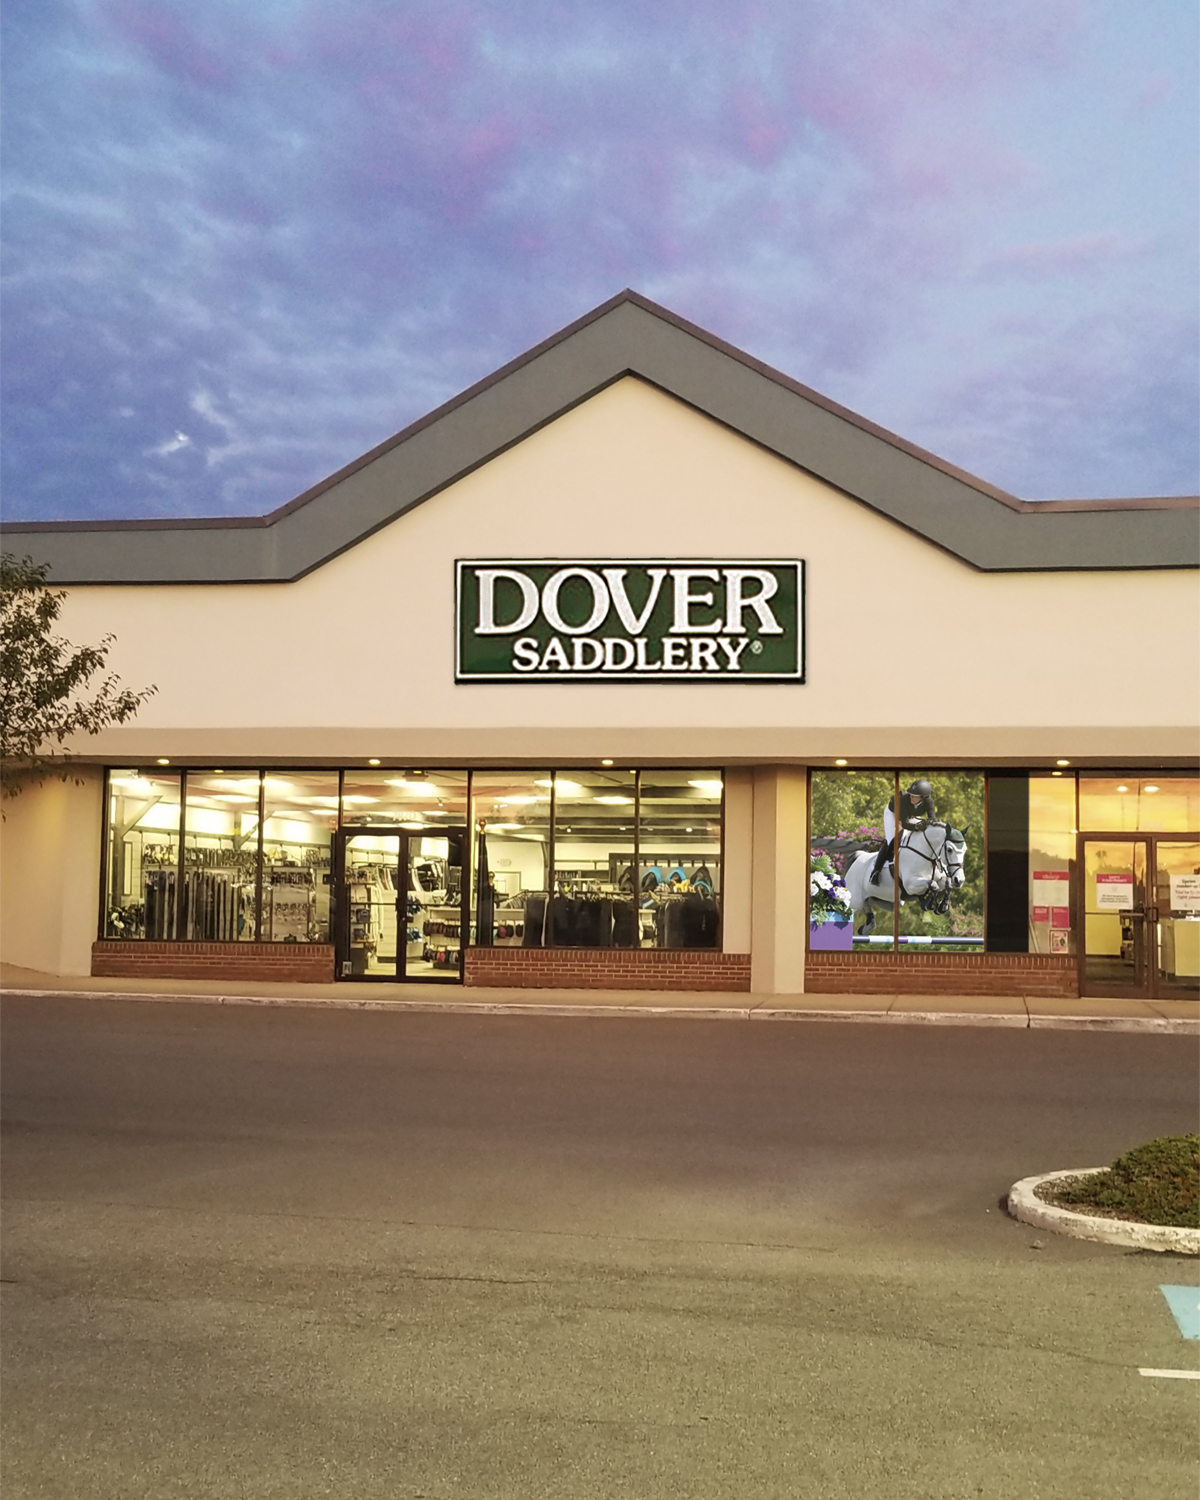 Dovery Saddlery Buffalo, NY storefront